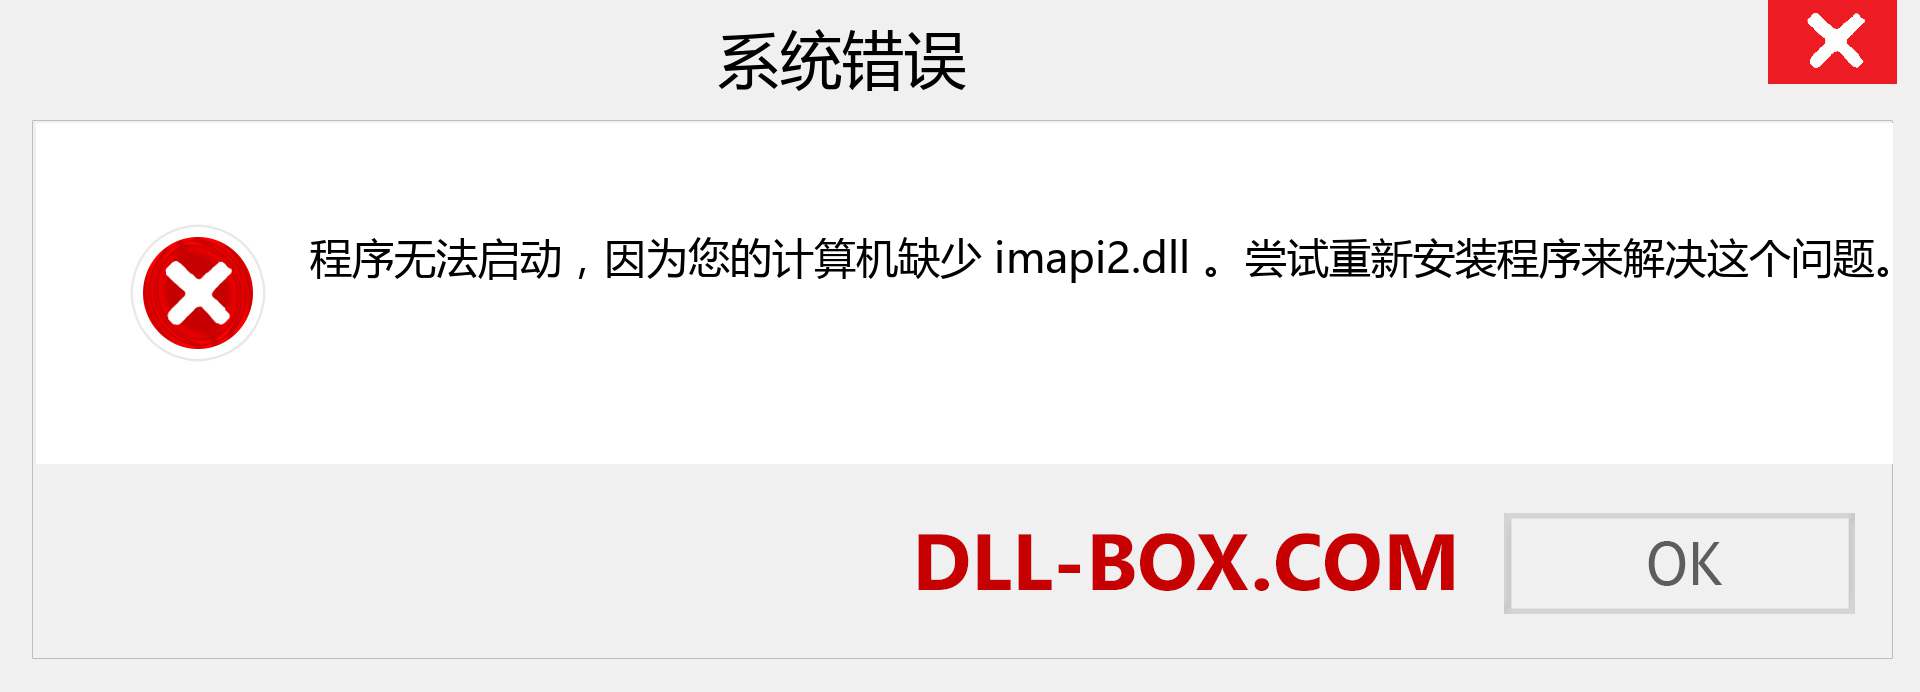 imapi2.dll 文件丢失？。 适用于 Windows 7、8、10 的下载 - 修复 Windows、照片、图像上的 imapi2 dll 丢失错误